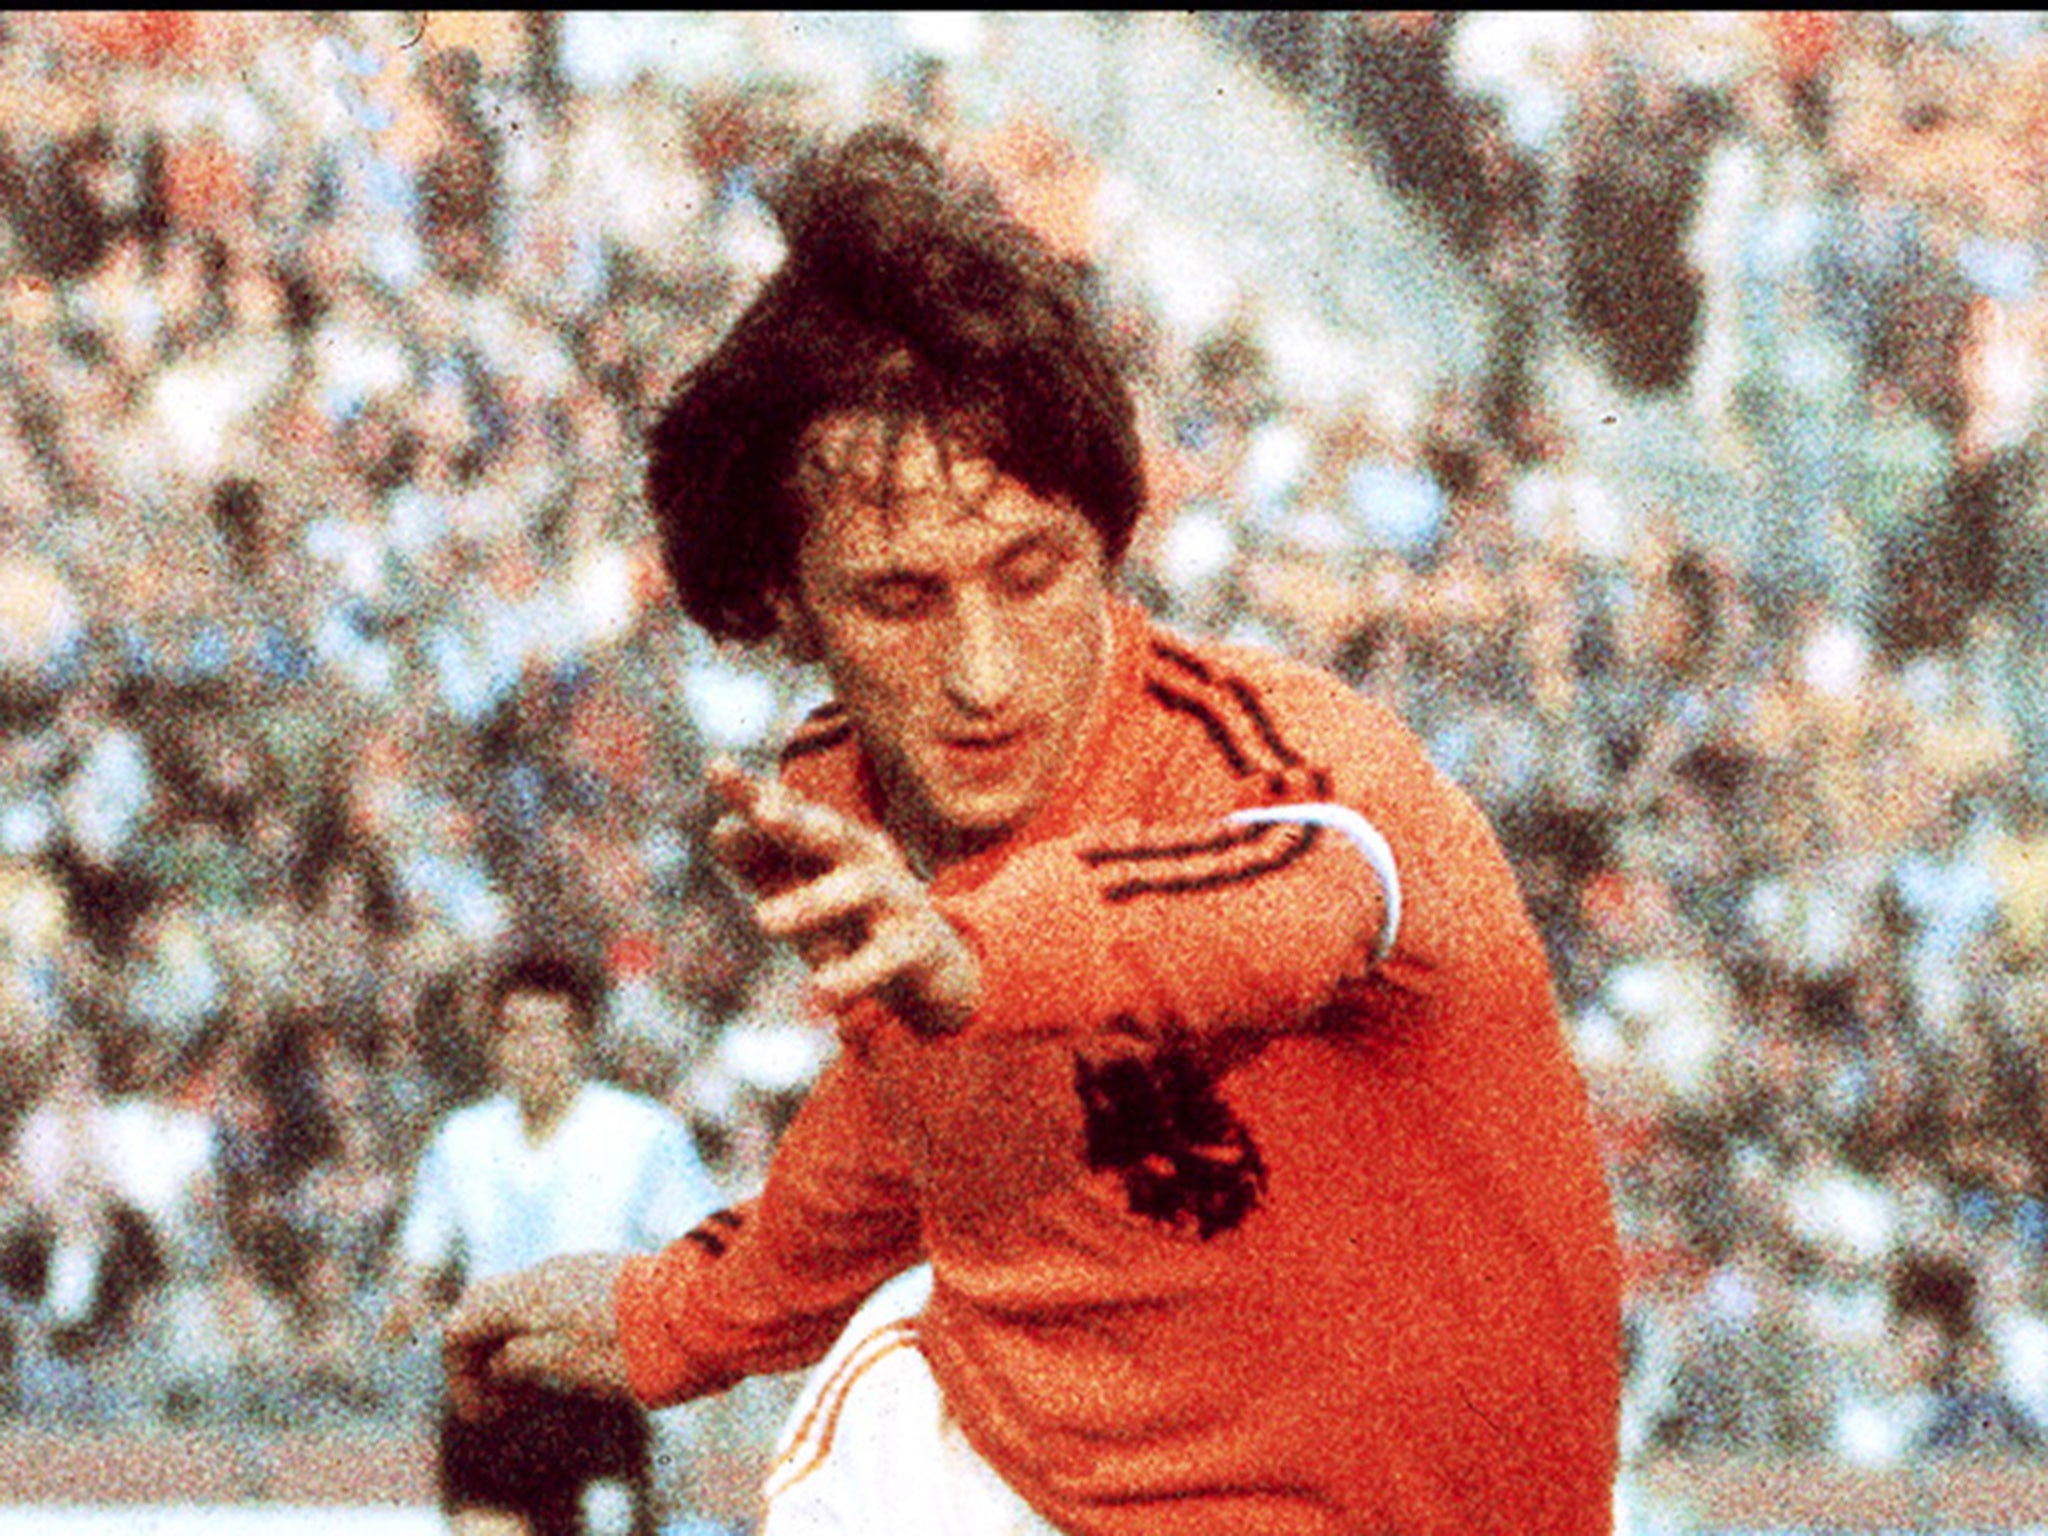 Johan Cruyff dead: why Cruyff refused to wear the trademark three